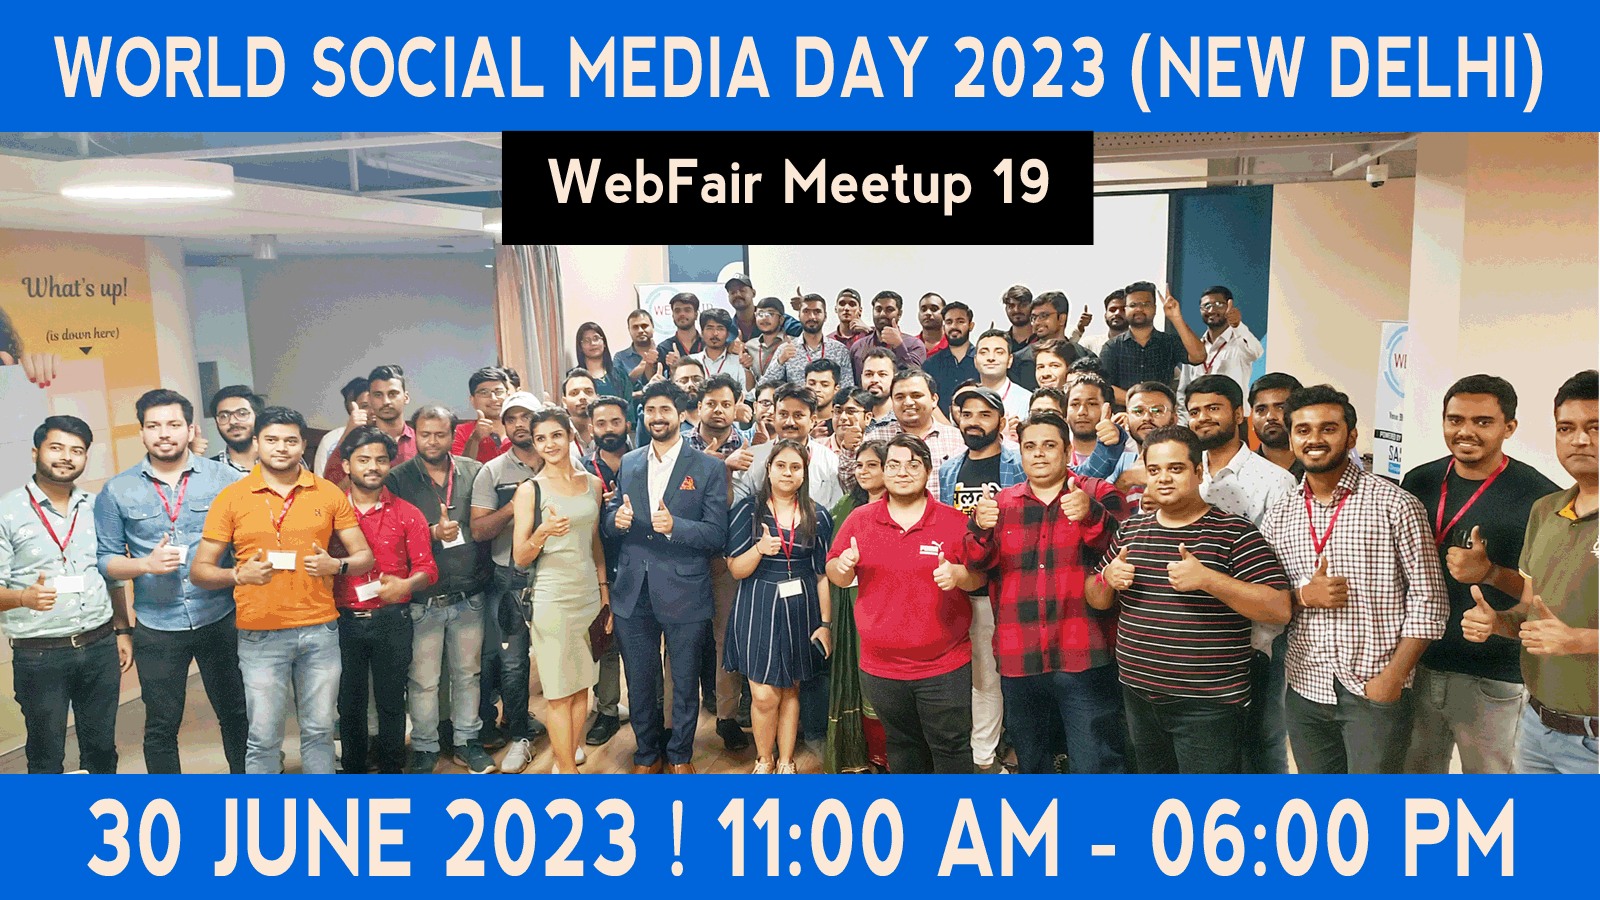 webfair meetup 19 new delhi